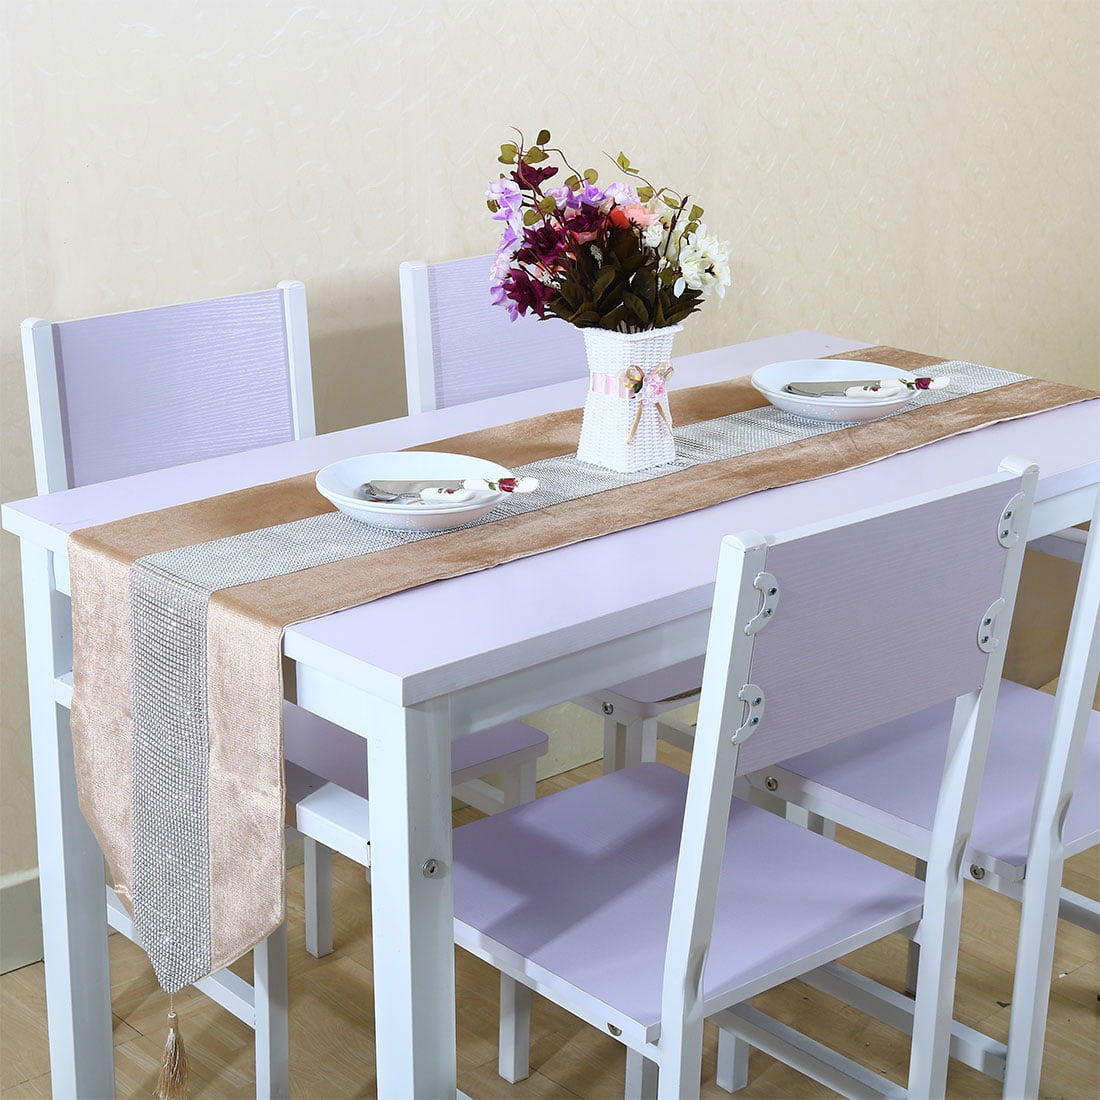 13"x78" Home Decor Raised Flocked Blossom Satin Style Table Runner & Tassels